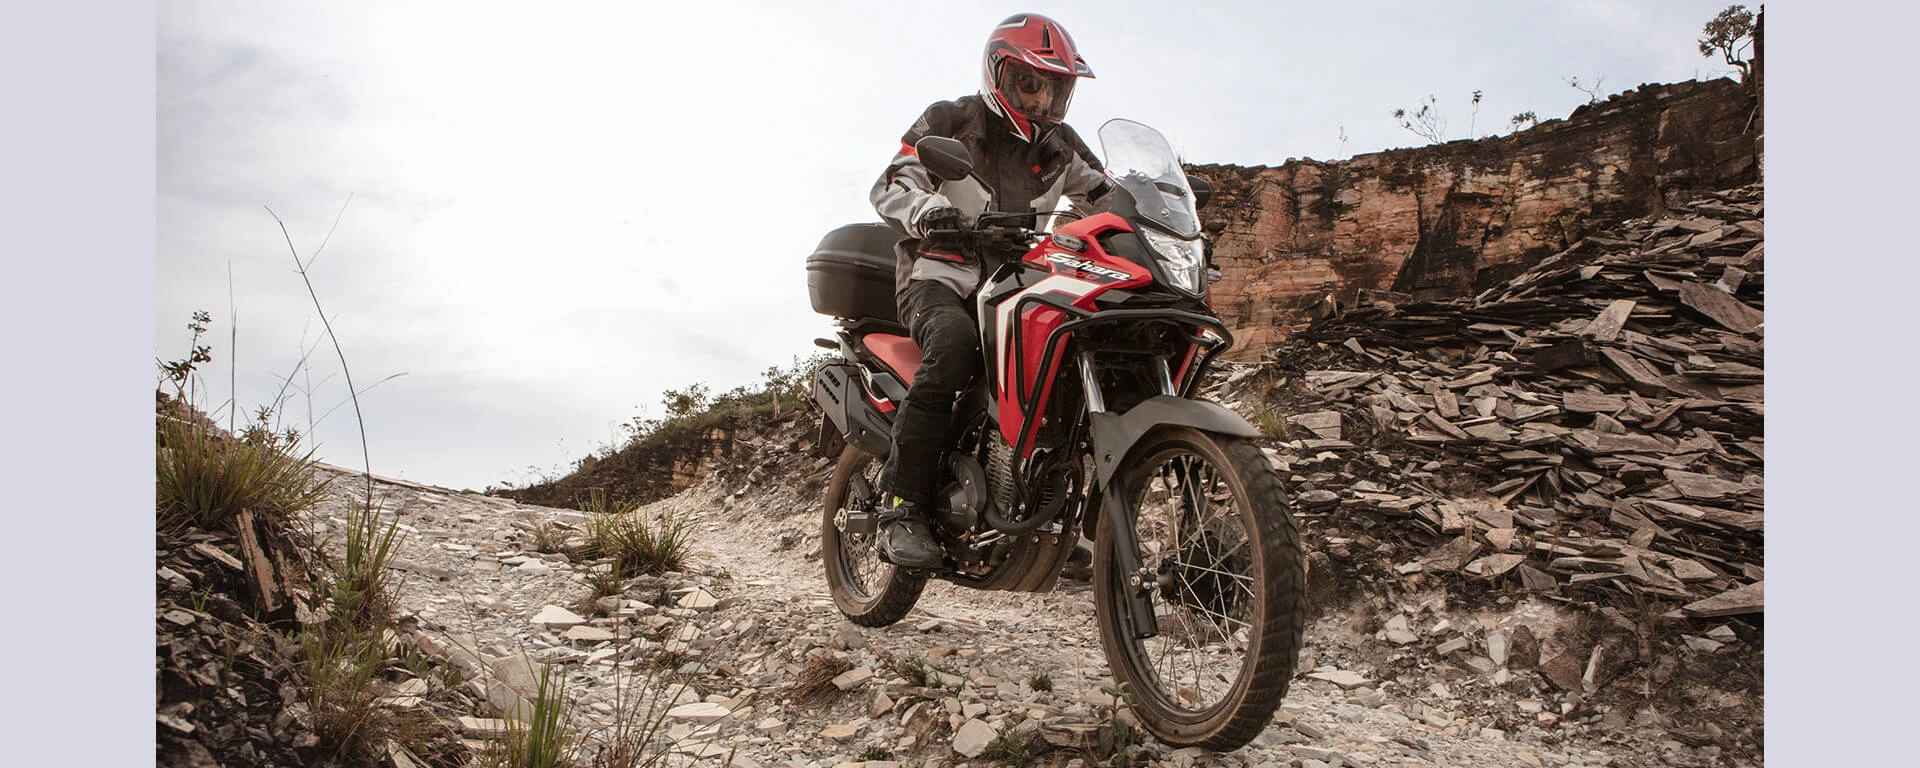 Piloto em moto Honda Sahara 300 vermelha em estrada de areia usando a tecnologia do câmbio de 6 marchas